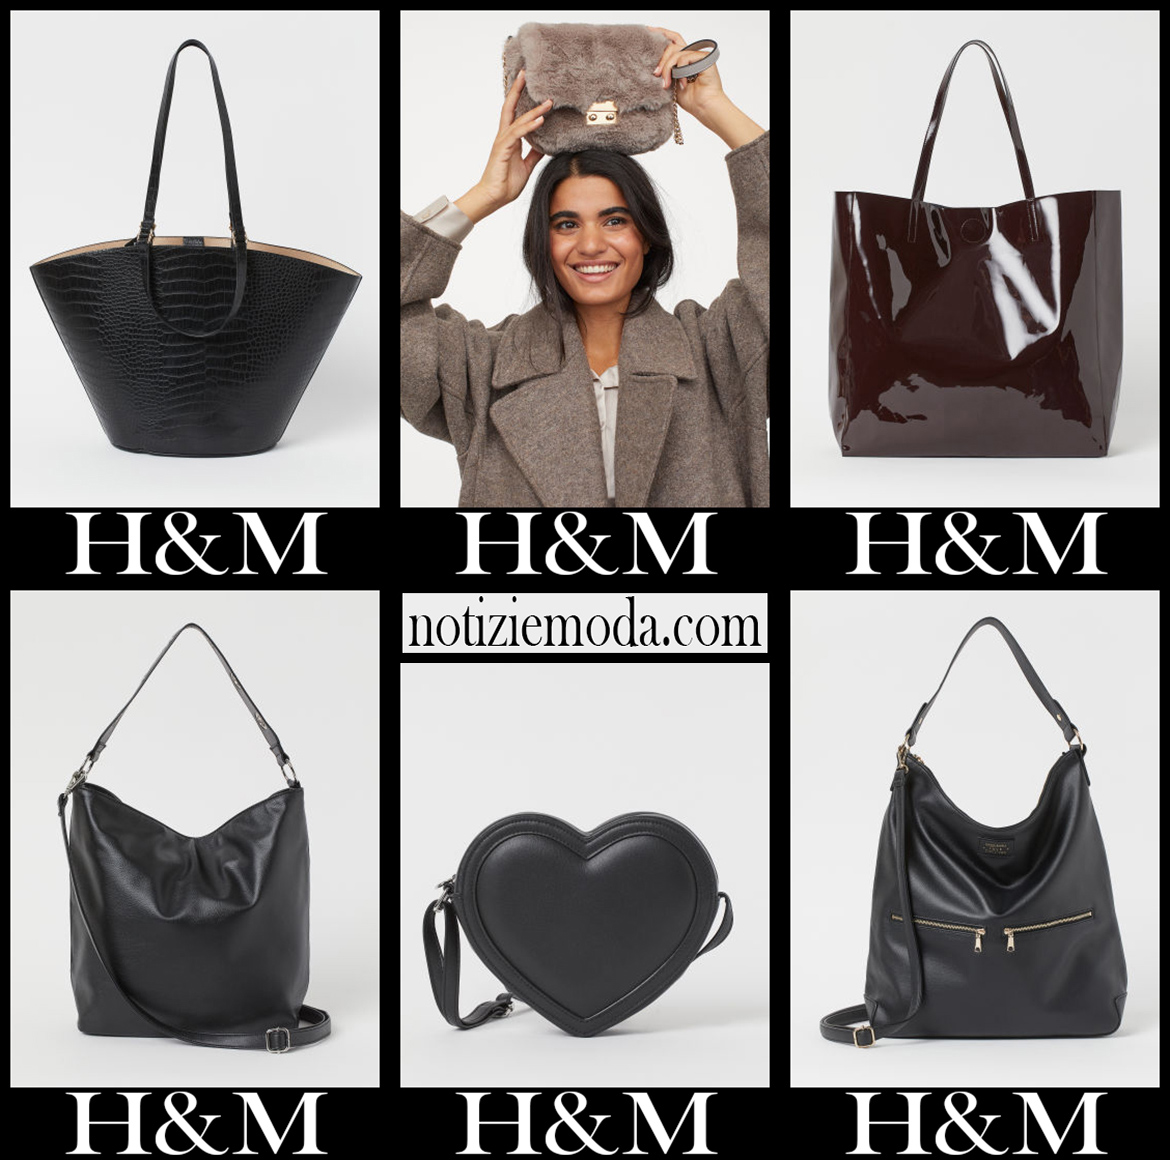 Nuovi arrivi borse HM 2021 accessori moda donna